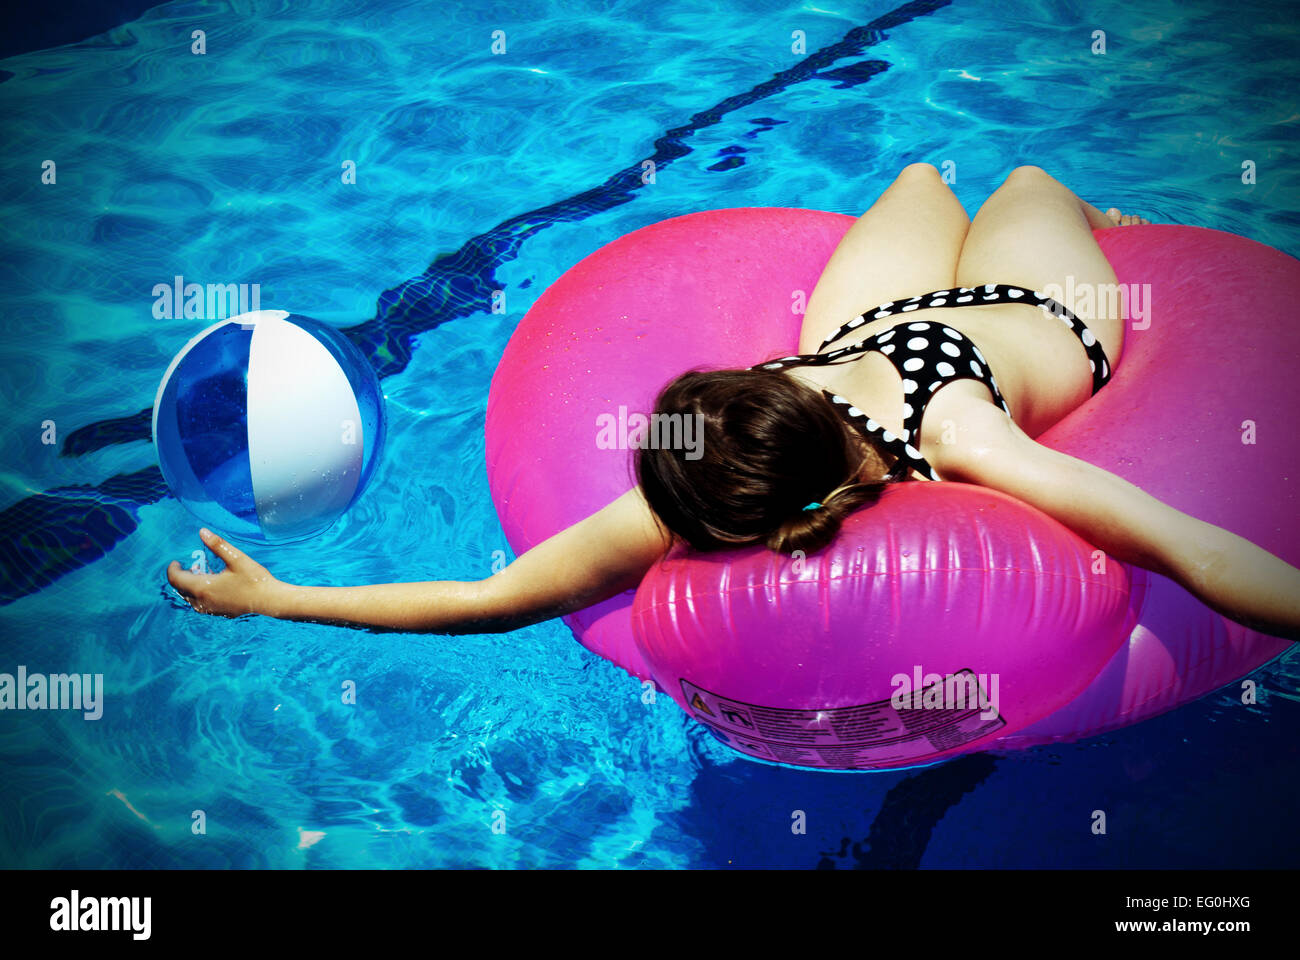 Frau auf einem aufblasbaren Gummiring liegend, die mit Ball in einem Schwimmbad spielt Stockfoto